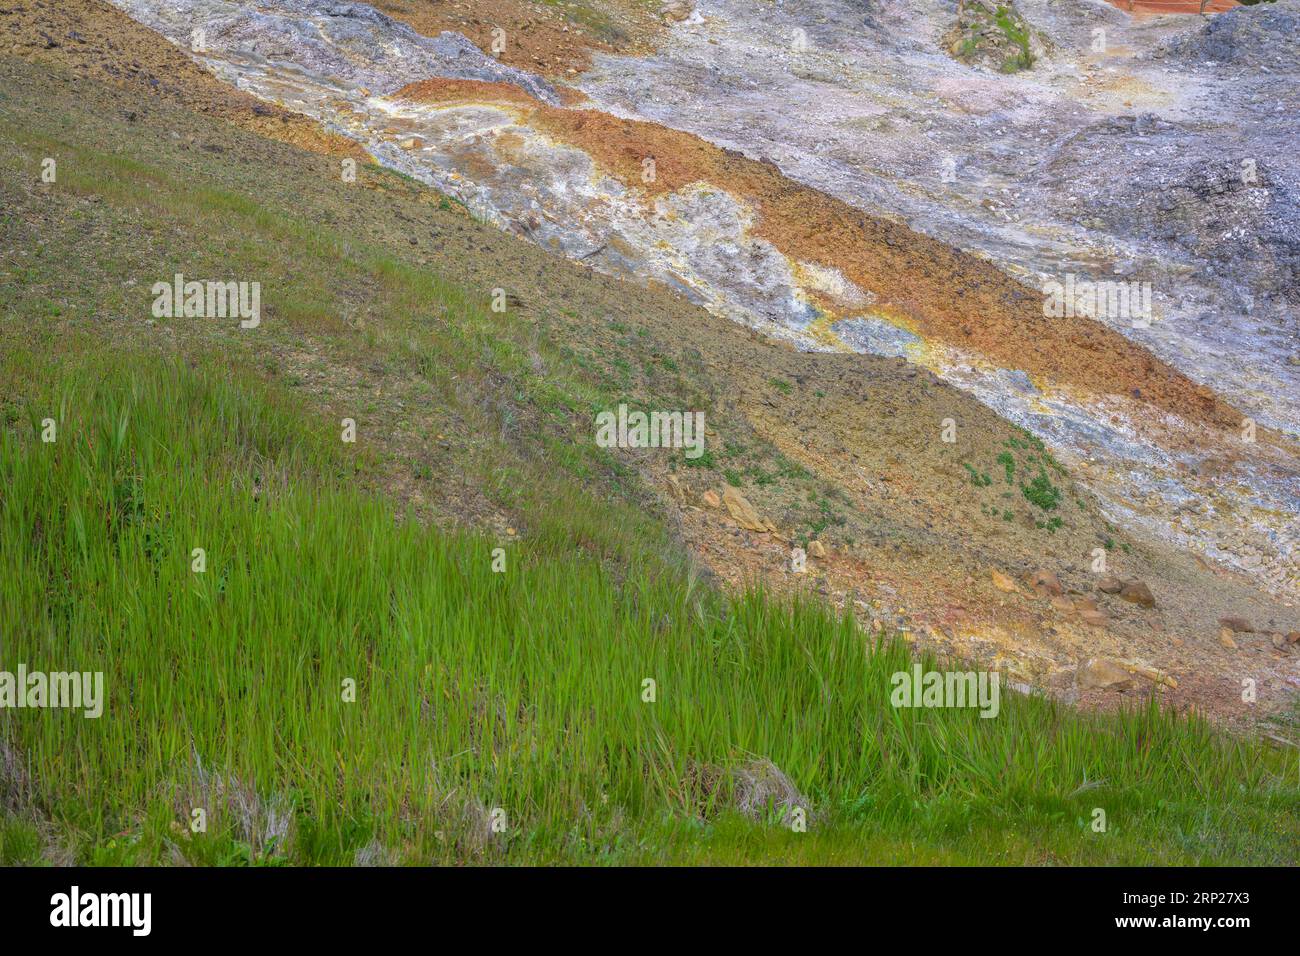 Hellgrünes Gras im Gegensatz zu den bunten Schutthaufen, Biancane Geothermal Park, Monterotondo Marittimo, Provinz Grosseto, Italien Stockfoto